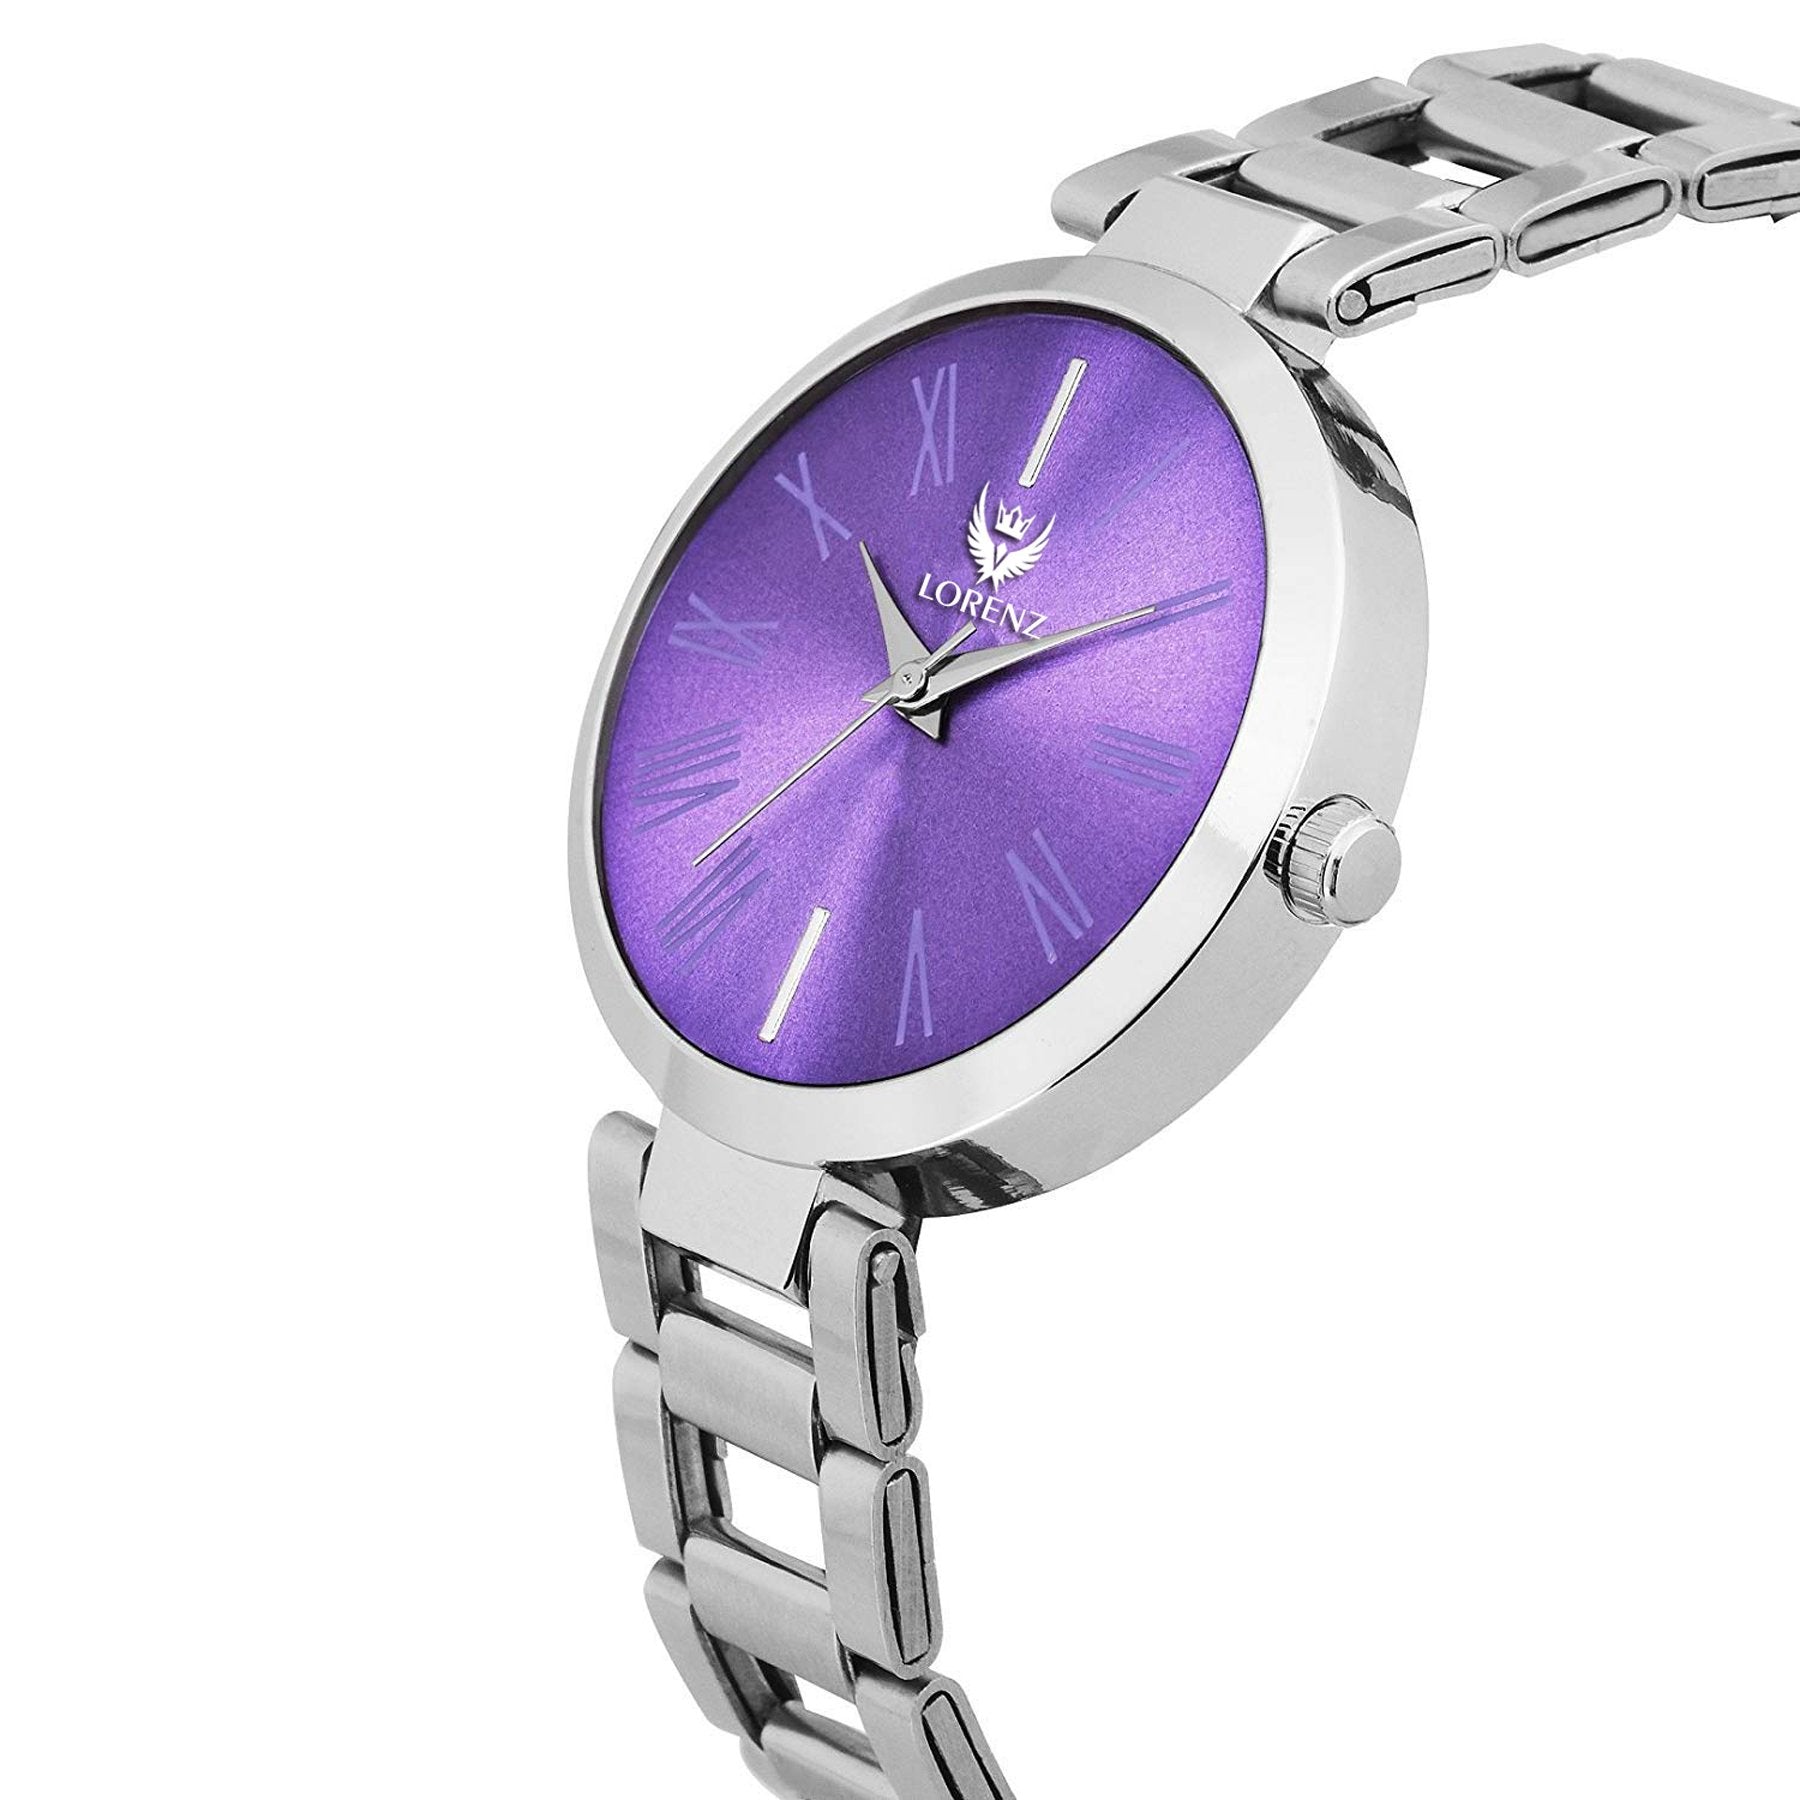 Lorenz Analogue Purple Dial Watch for Women & Girls - AS-44A - Lorenz Fashion